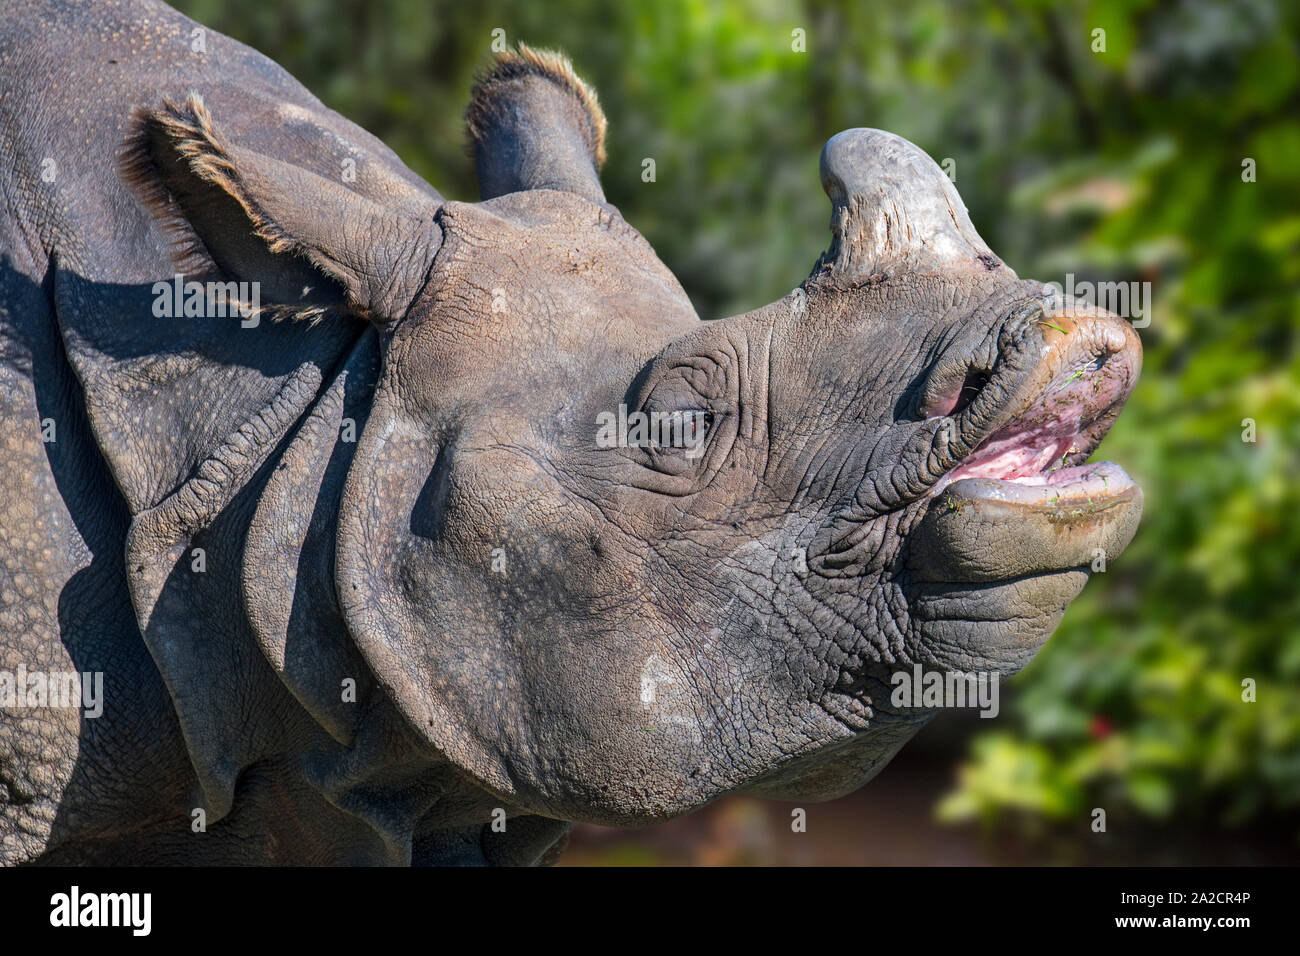 Rhinocéros indien / rhinocéros à une corne / rhinocéros unicorne de l'Inde (Rhinoceros unicornis) gros plan de la tête et de l'avertisseur sonore Banque D'Images